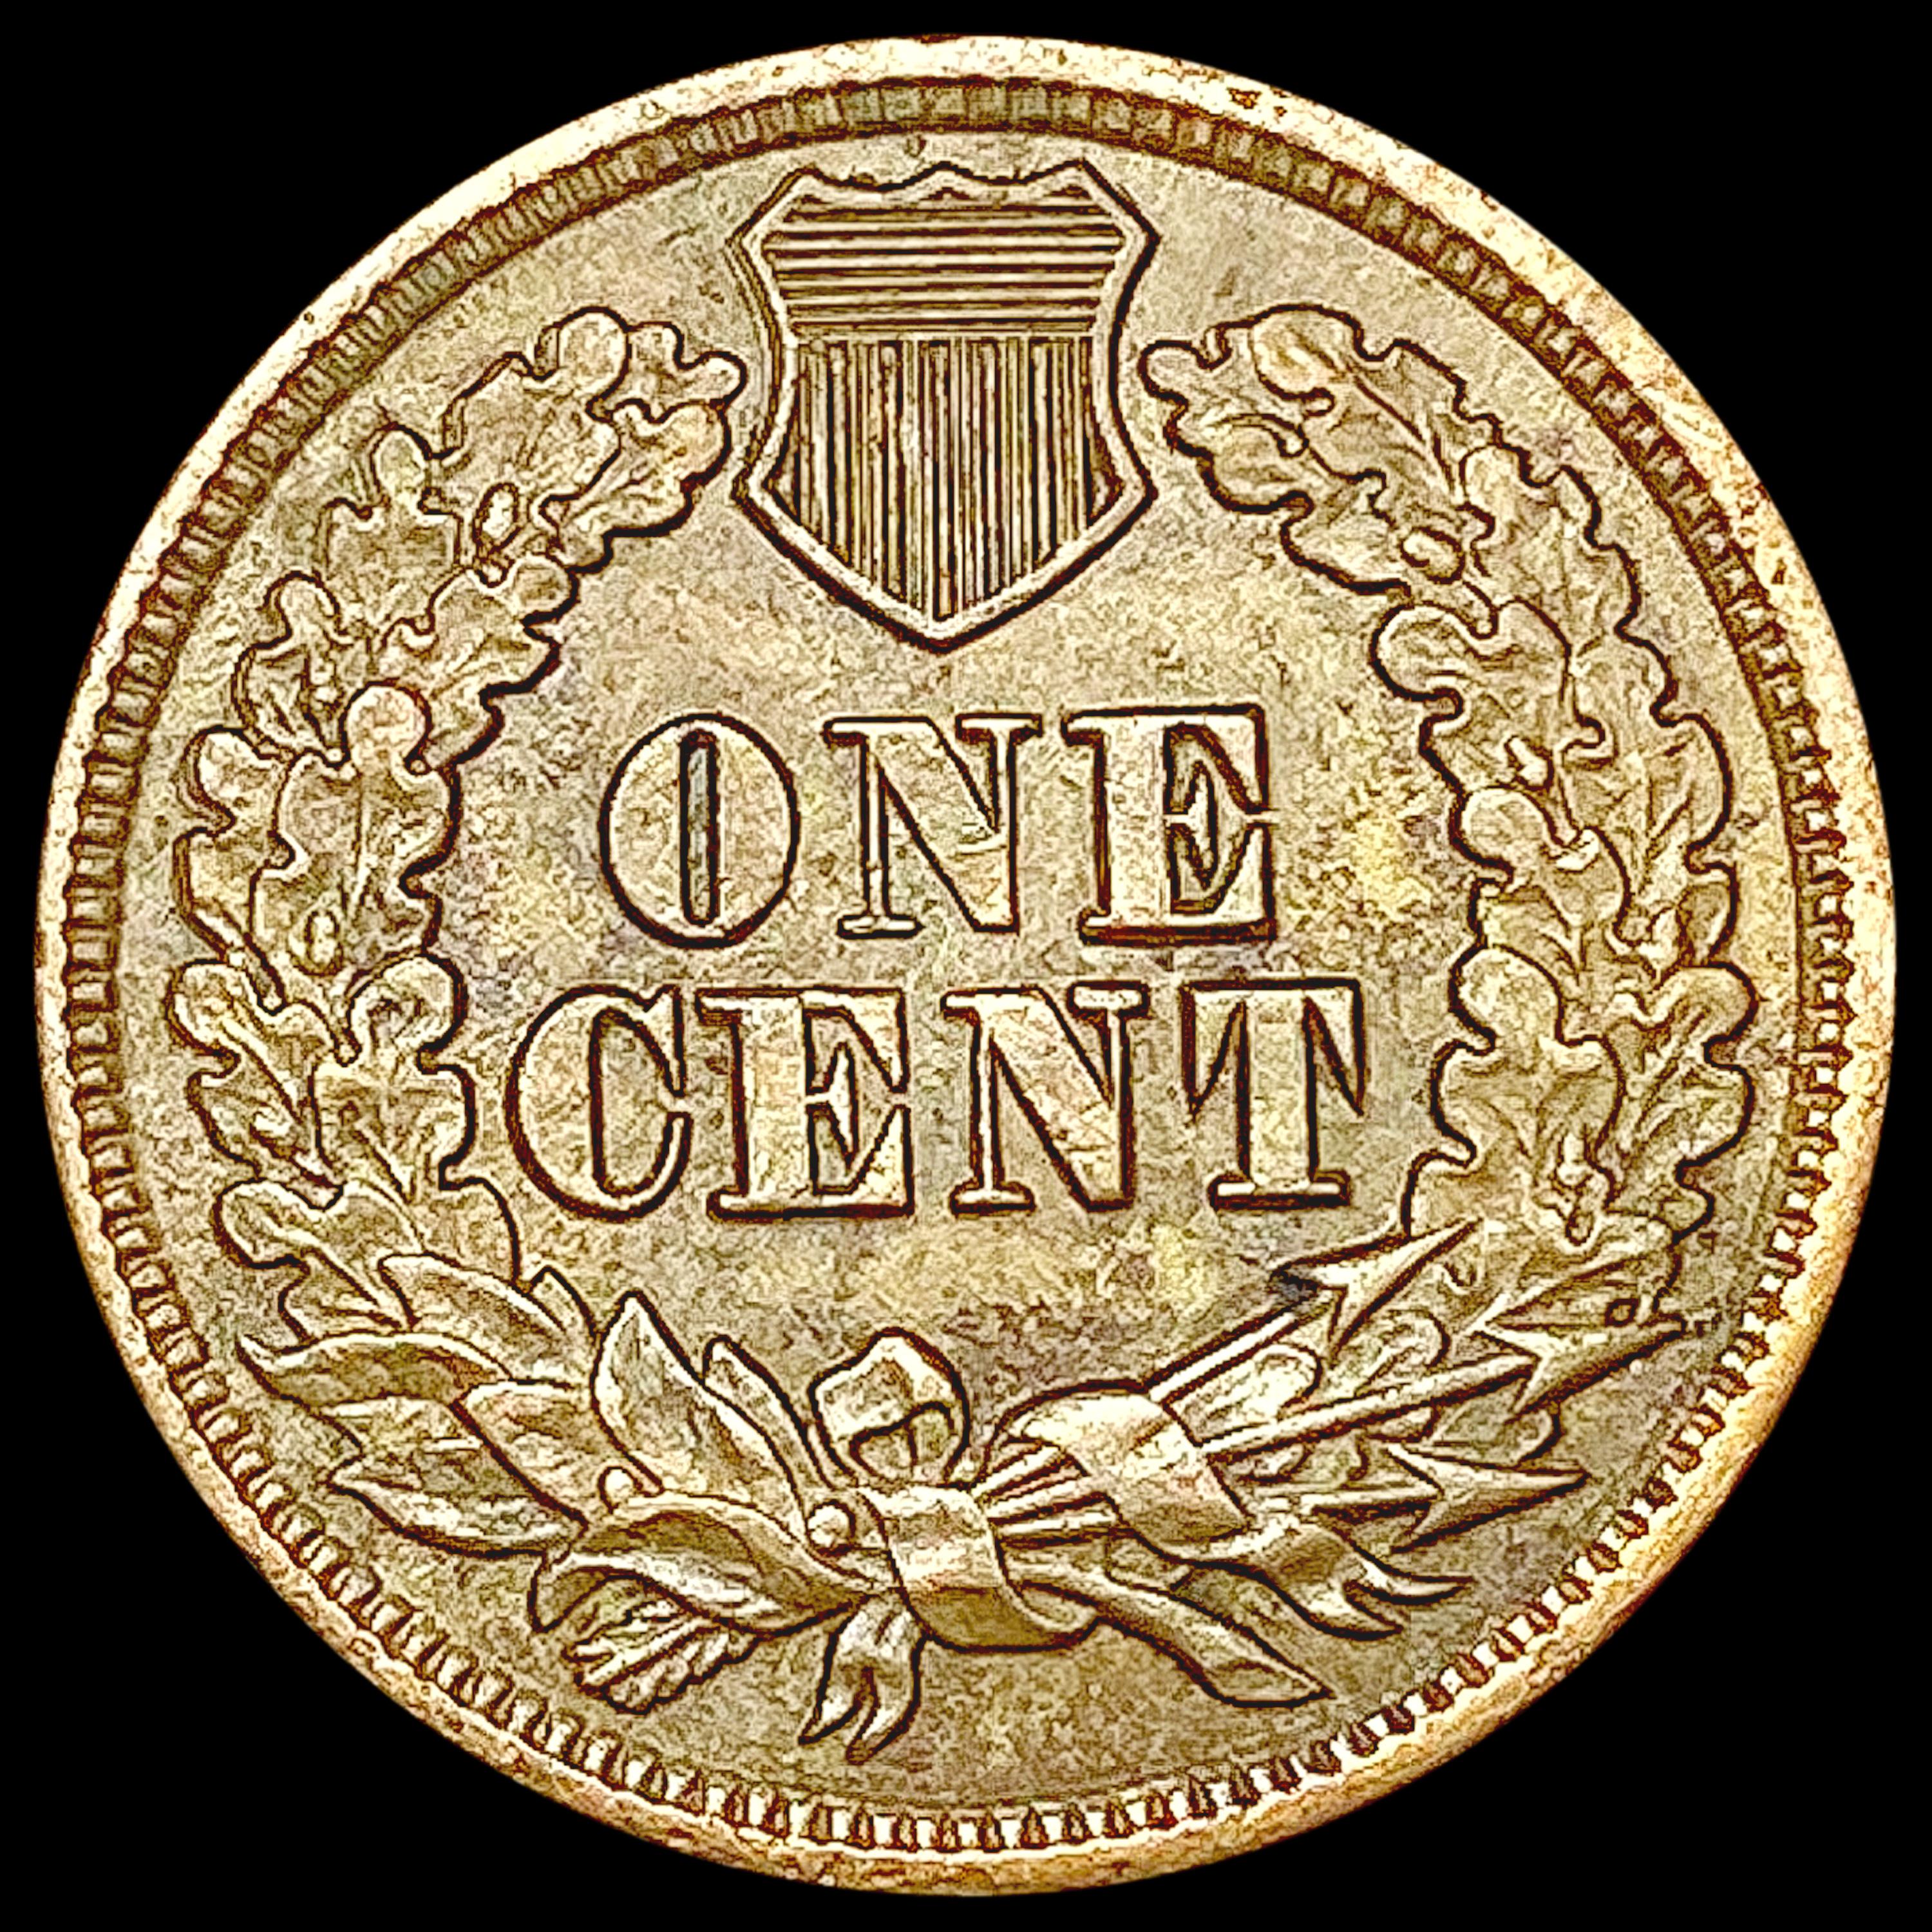 1863 Indian Head Cent CHOICE AU